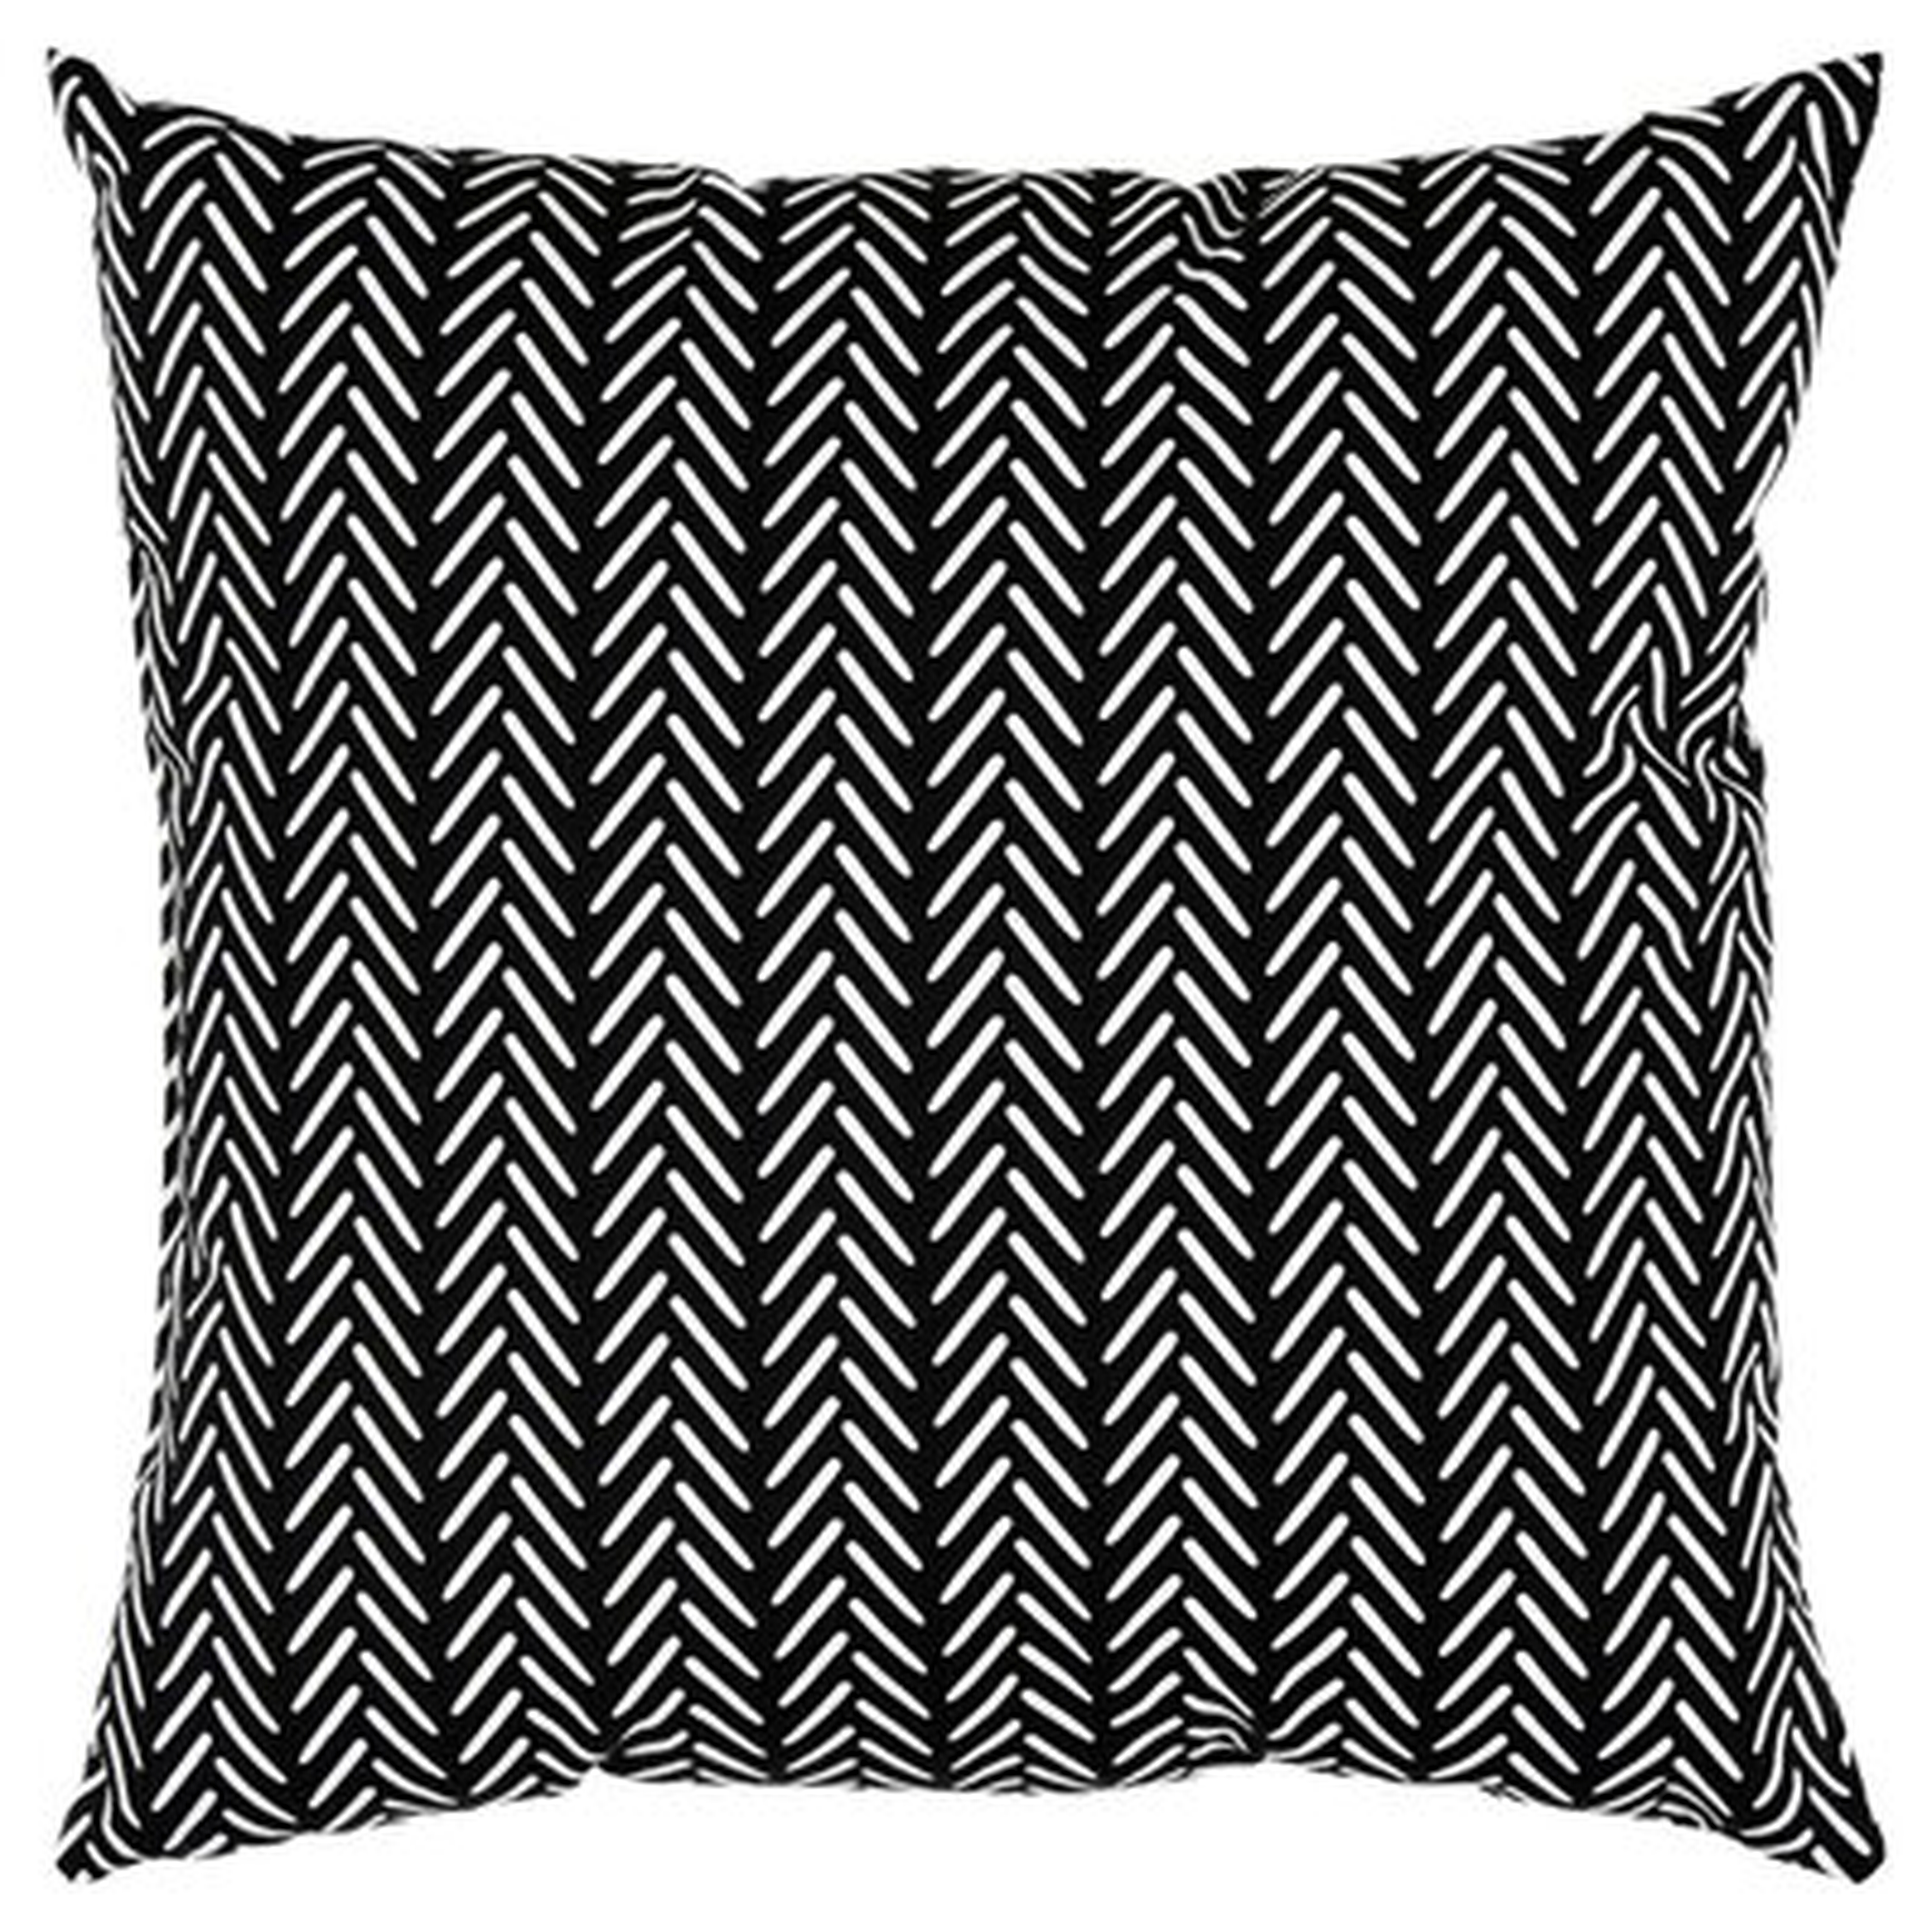 Caserta Indoor / Outdoor Striped Throw Pillow - Birch Lane